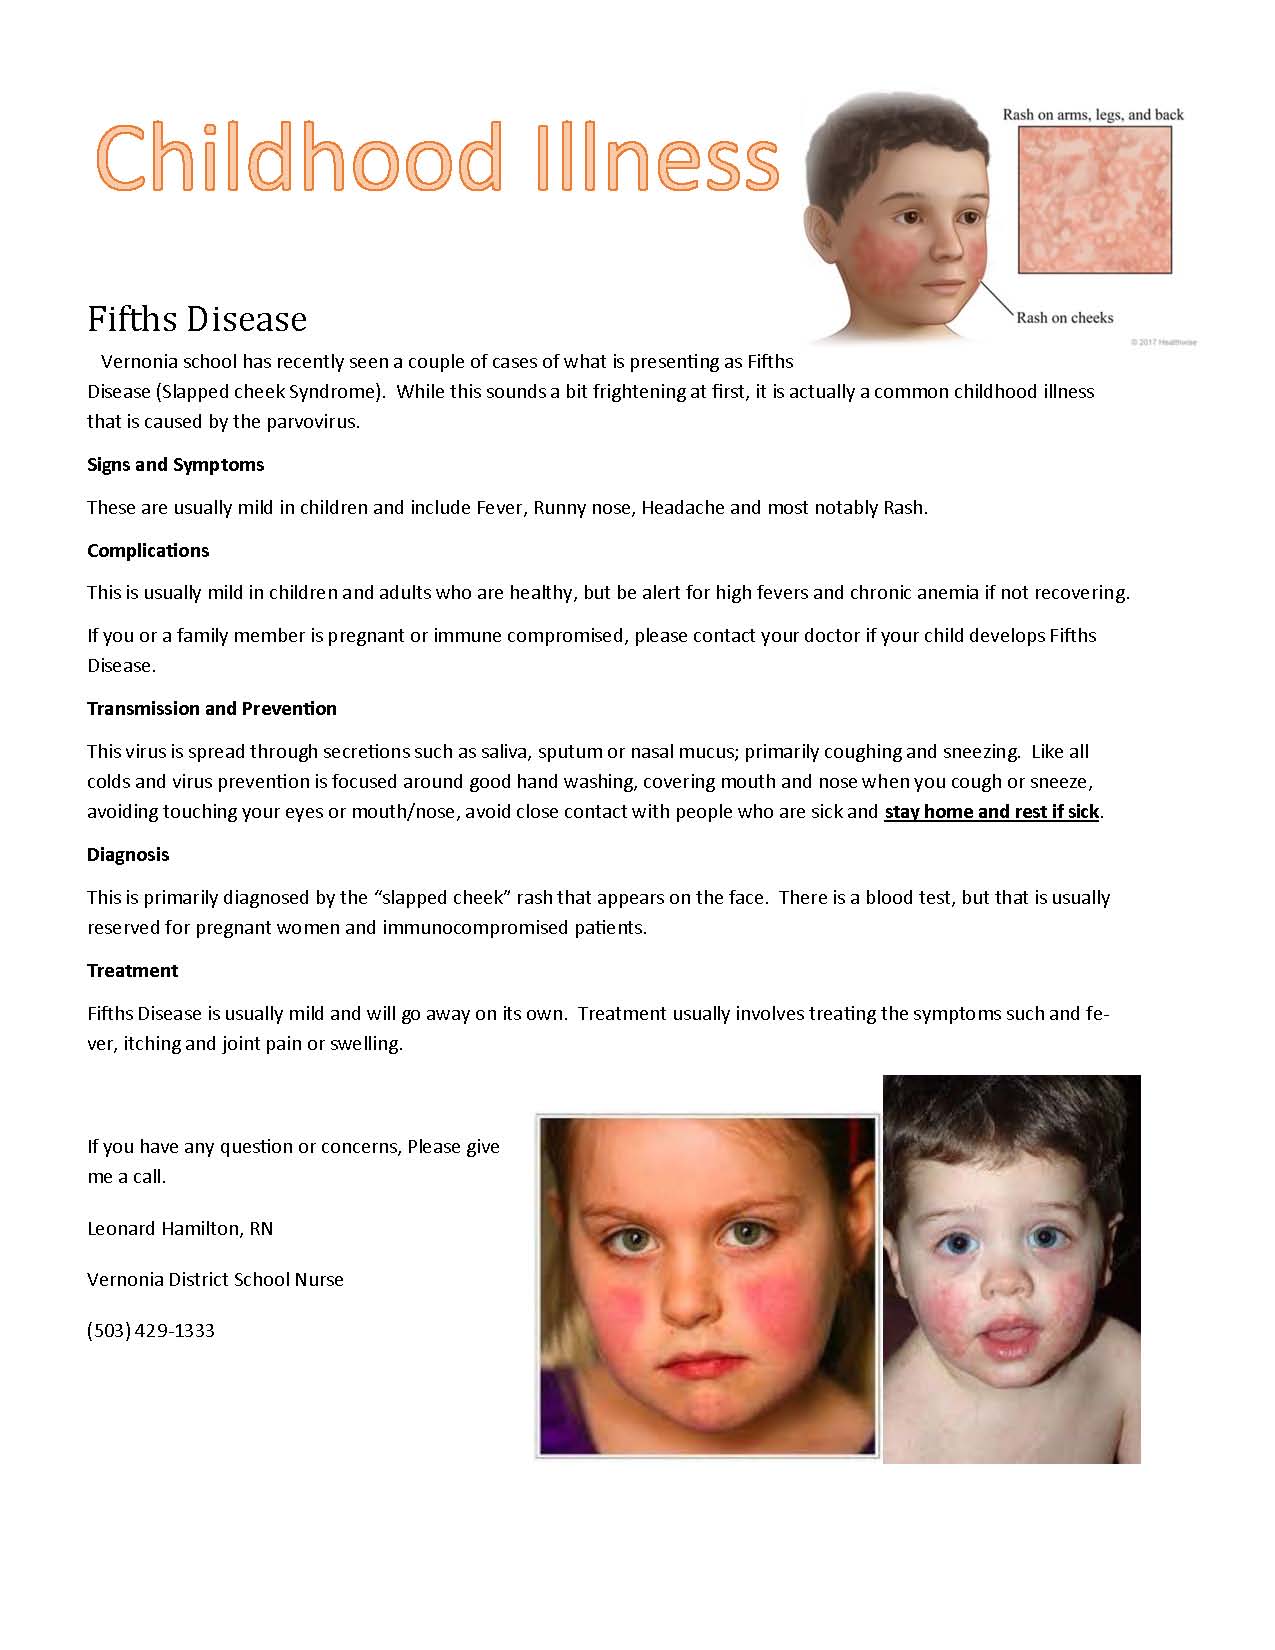 Fifths Disease Flyer